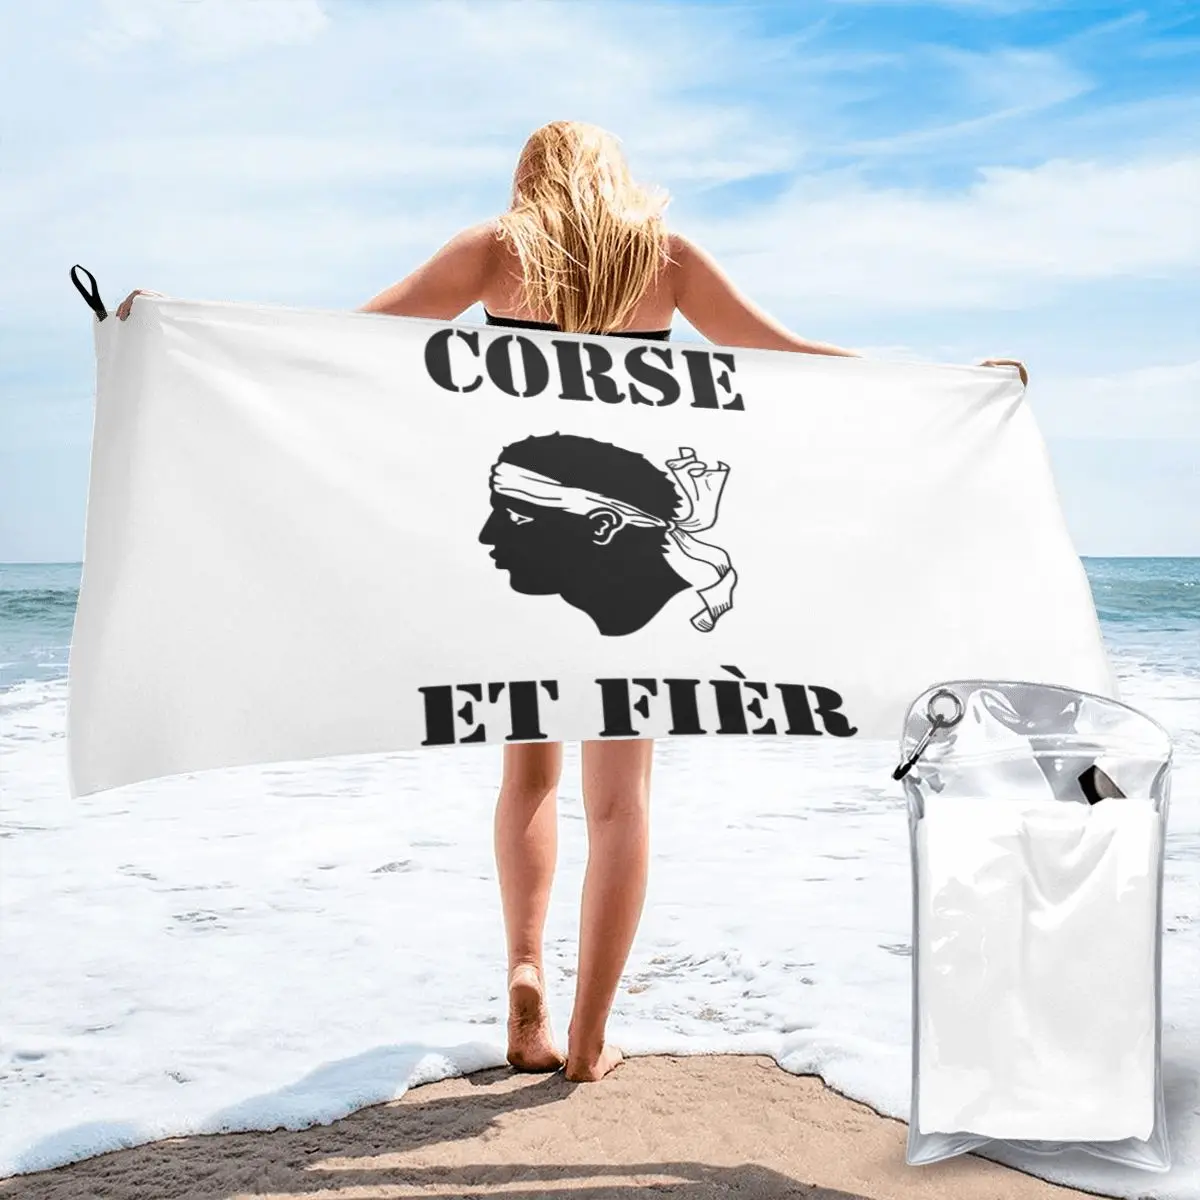 

T Corse Et Fier Du Au Corsica Poly Cotton Baby Bath Towel Quick Dry Beach Towel Minimalist All-match Super Absorbent Non-fading